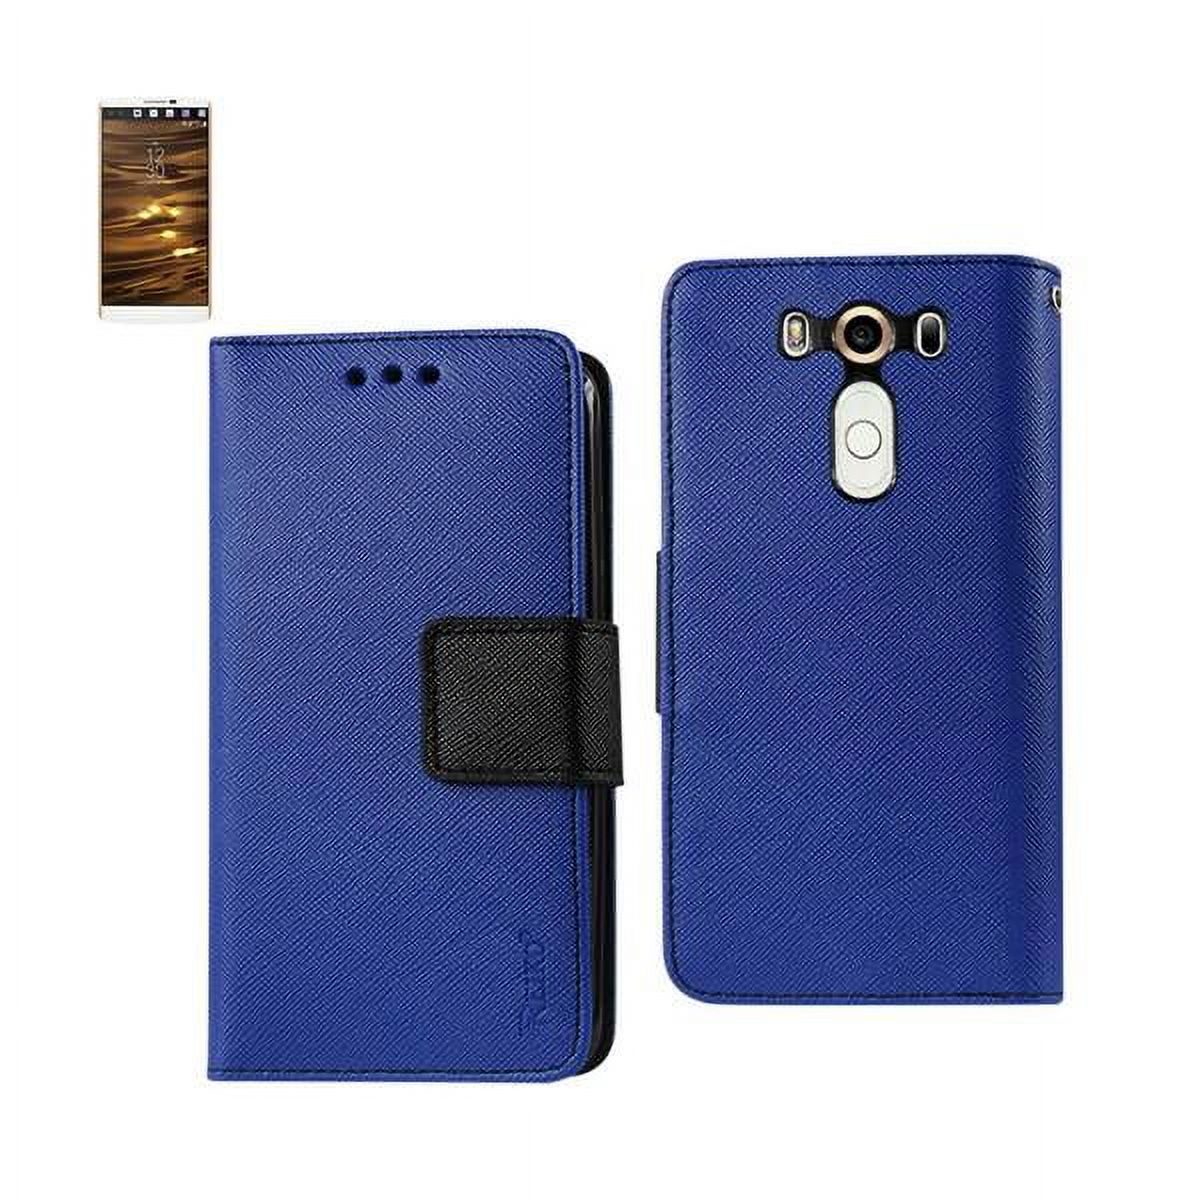 Reiko Flip Stand Leather Wallet Card Case for LG V10 - Navy/Black - image 1 of 4